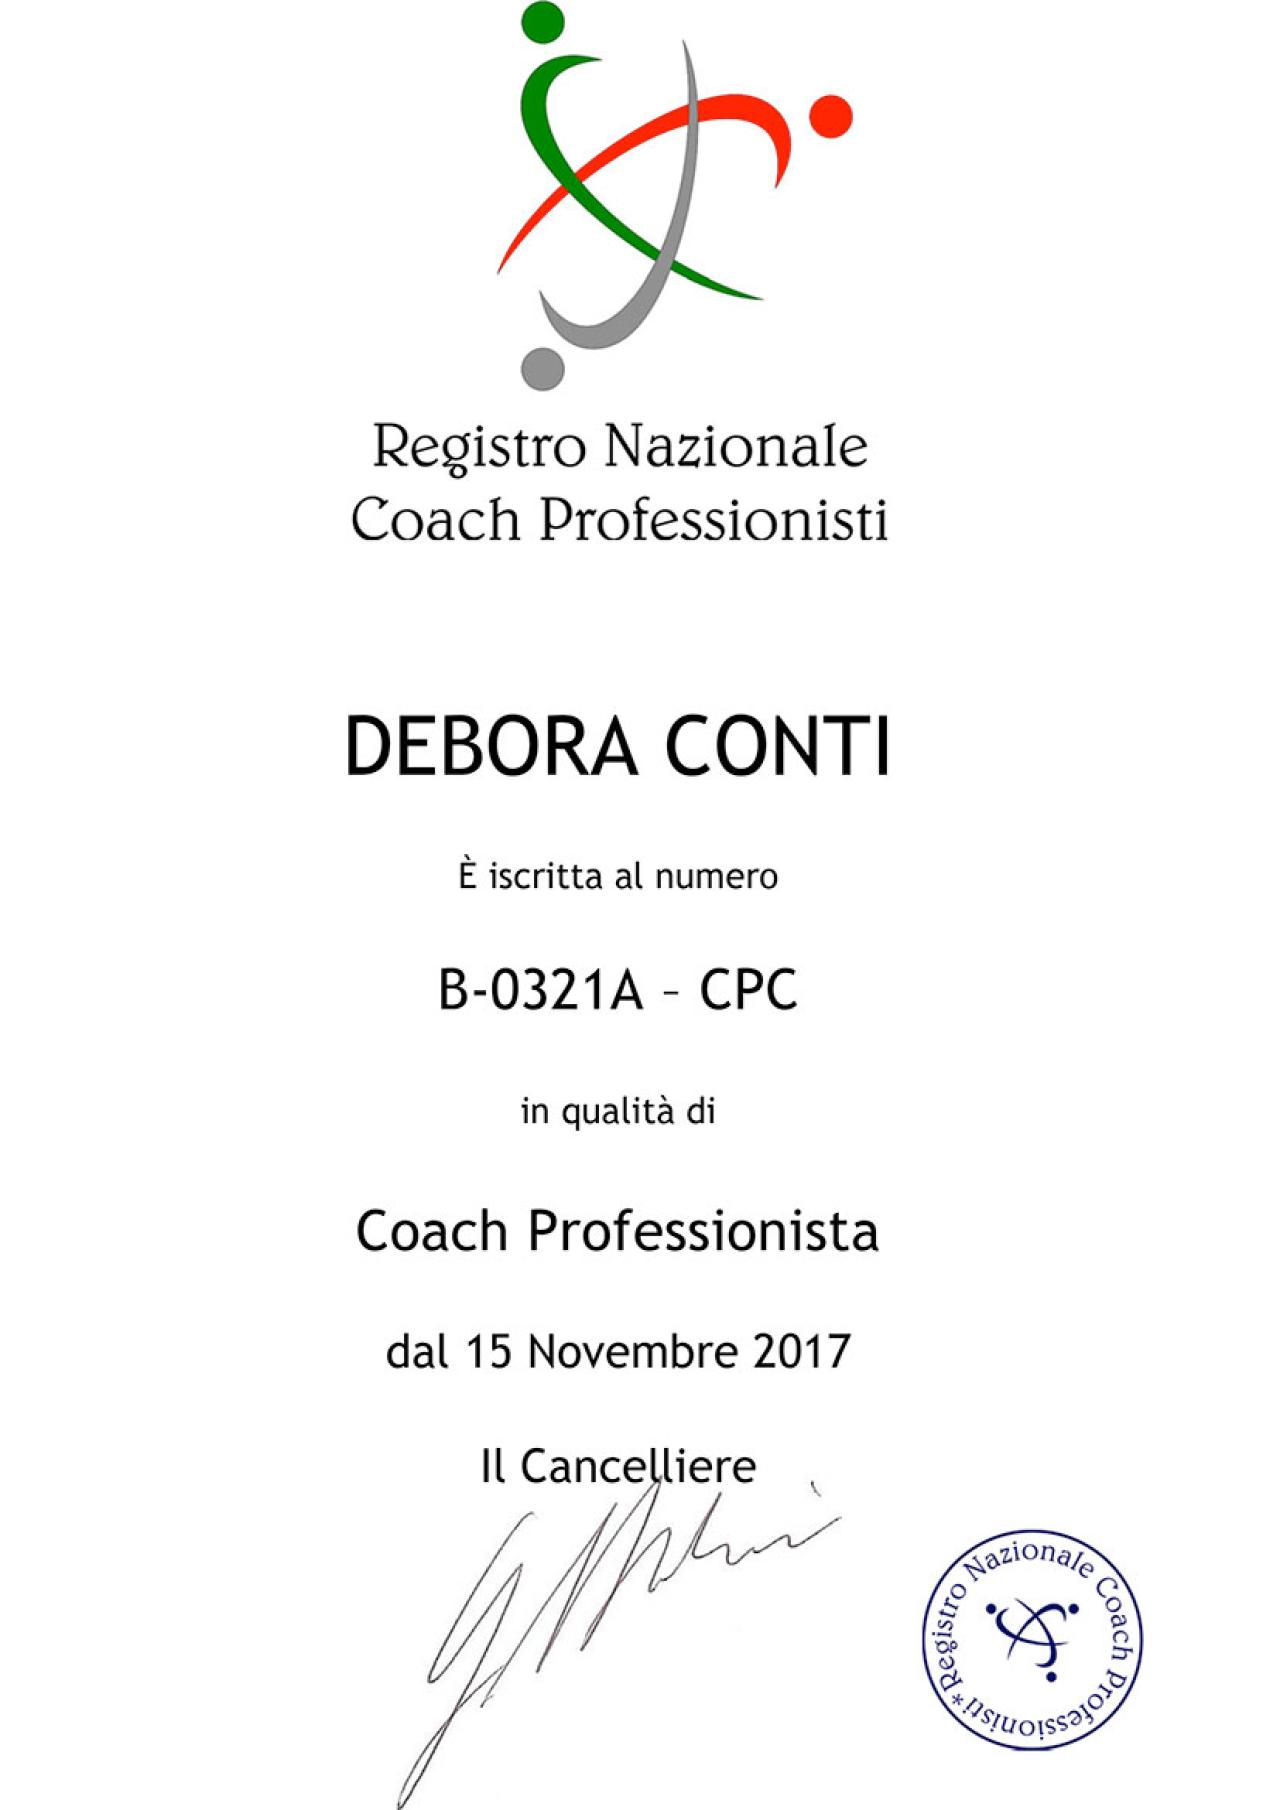 Registro Nazionale Coach Professionisti - Italia - Debora Conti